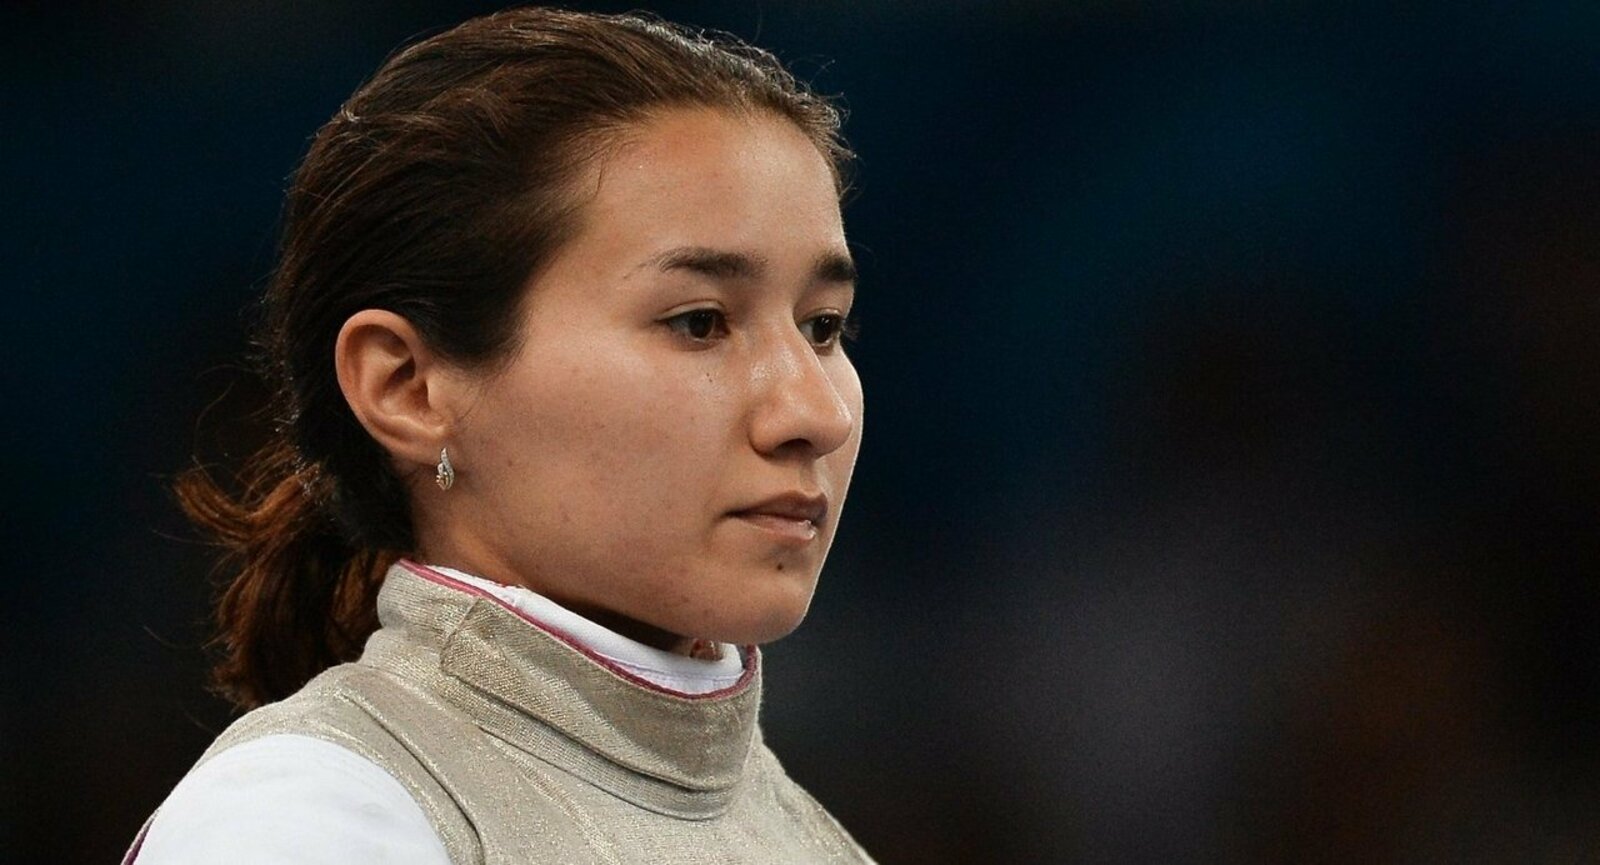 Башкирская спортсменка - рапиристка Аделина Загидуллина стала Олимпийской чемпионкой в составе российской сборной